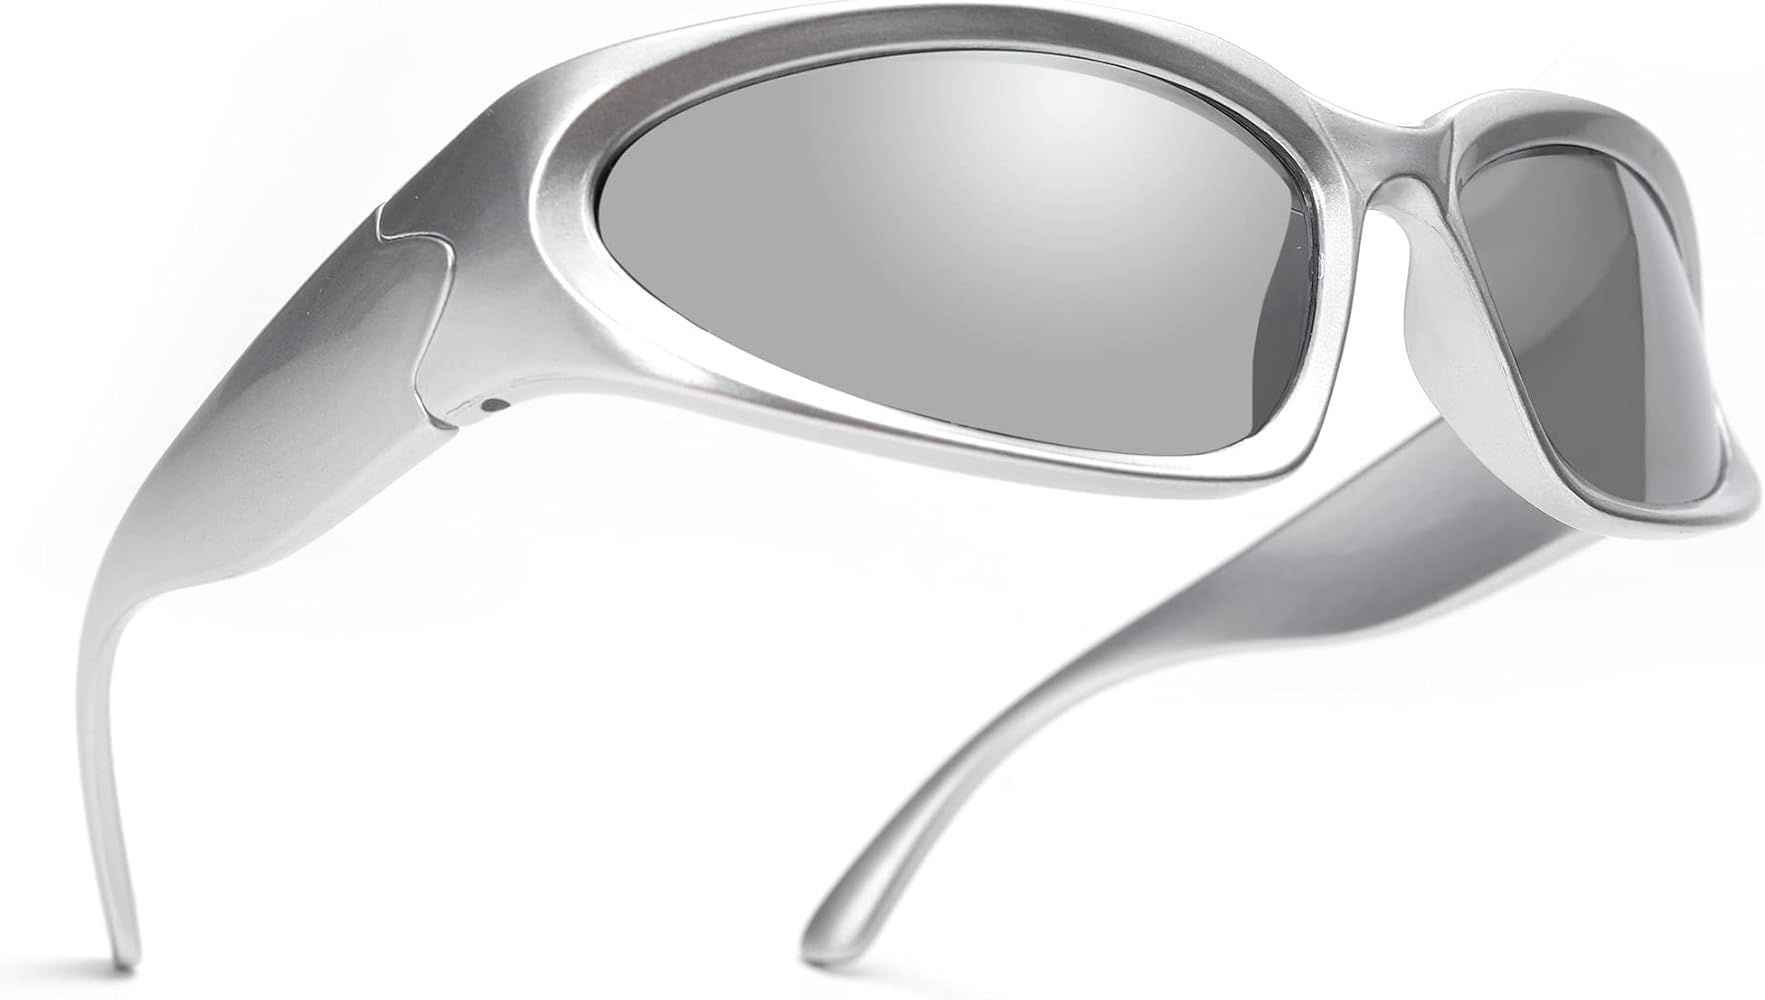 GUVIVI Wrap Around Fashion Sunglasses for Men Women Trendy Swift Oval Dark Futuristic Sunglasses ... | Amazon (US)